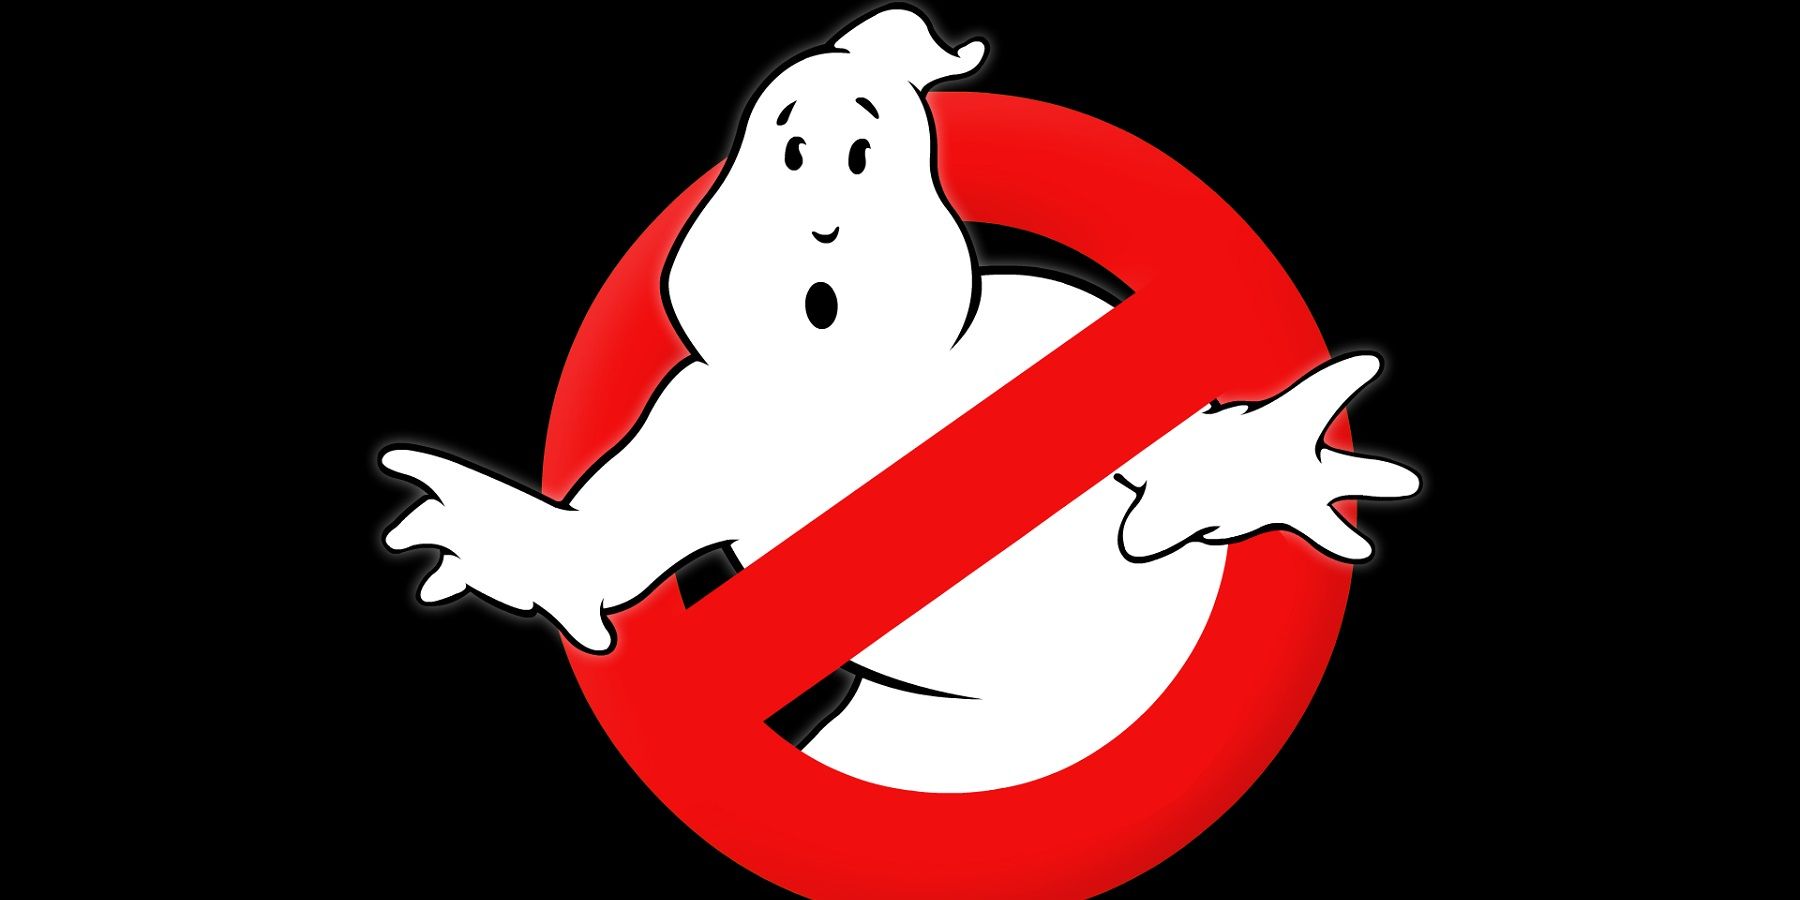 O novo jogo Ghostbusters está supostamente em desenvolvimento na sexta-feira, 13 de novembro.